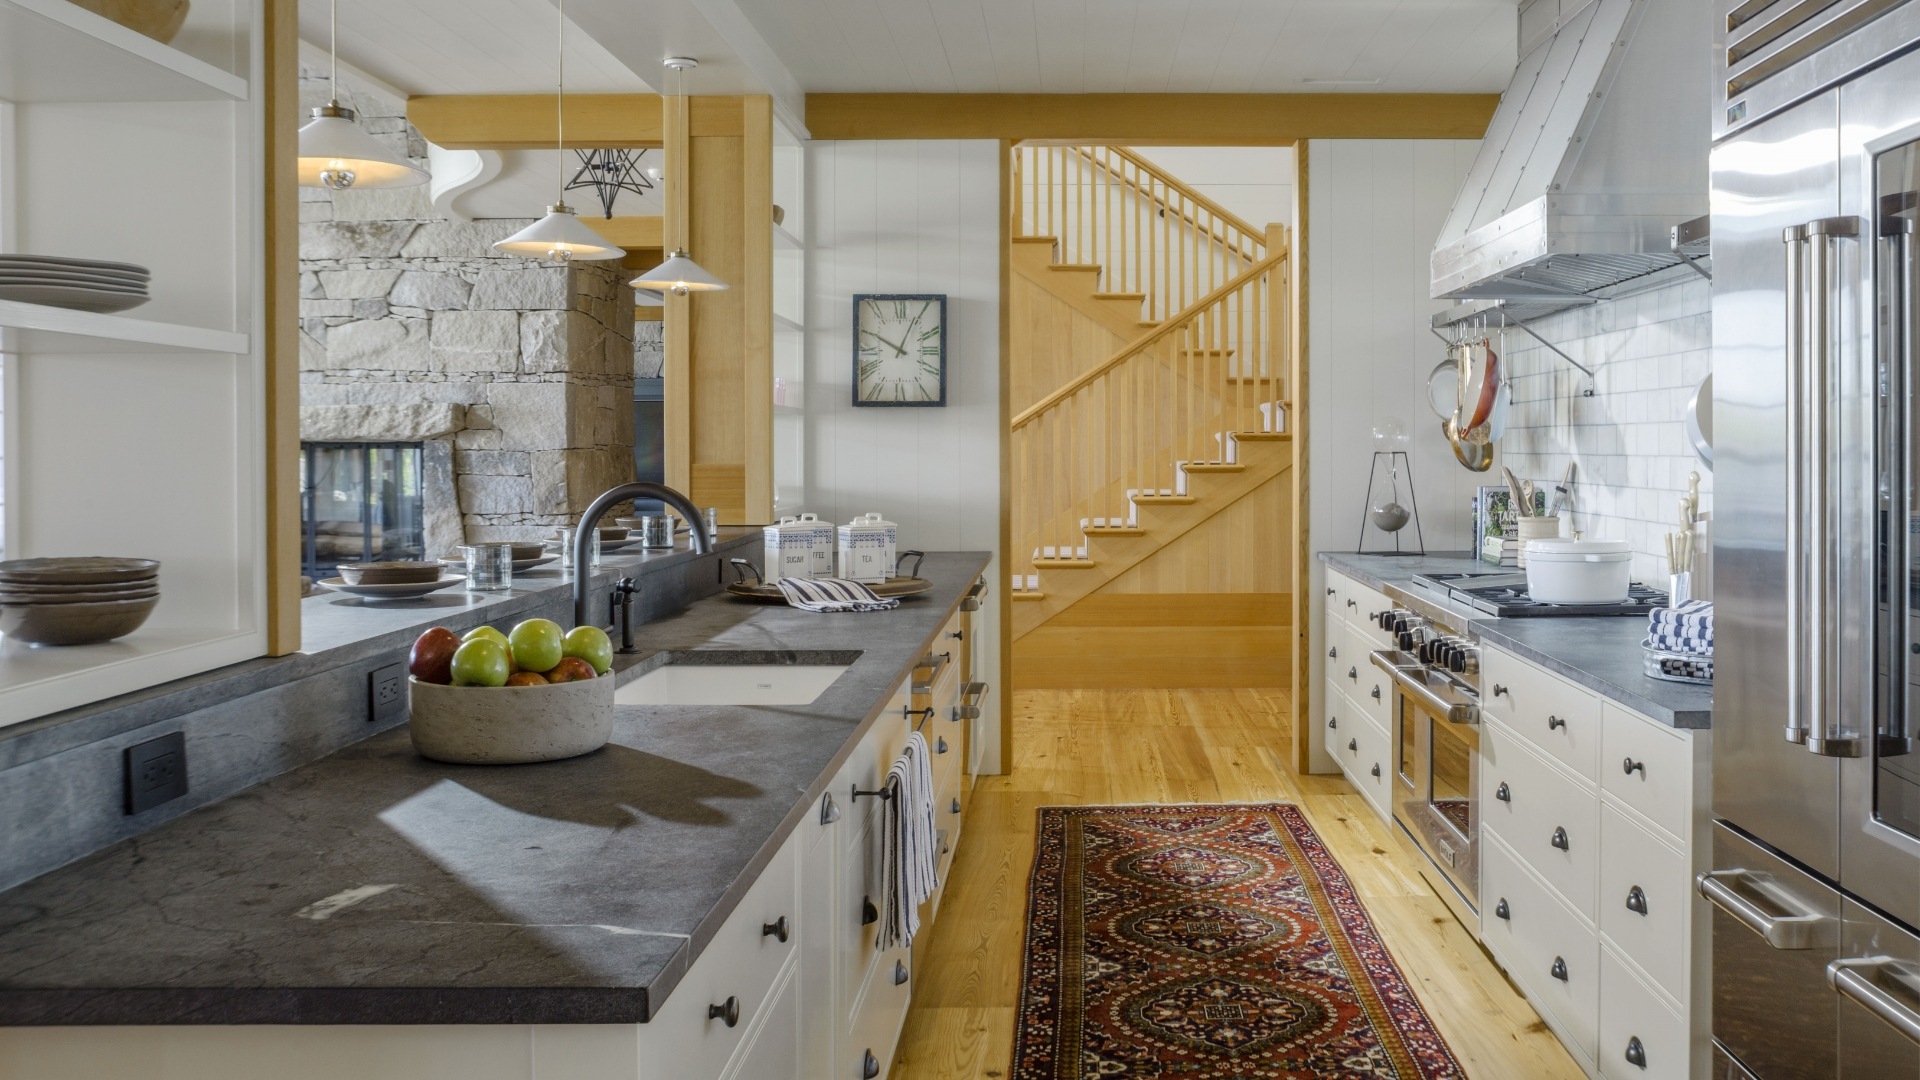 Kitchen with award-winning luxury interior design